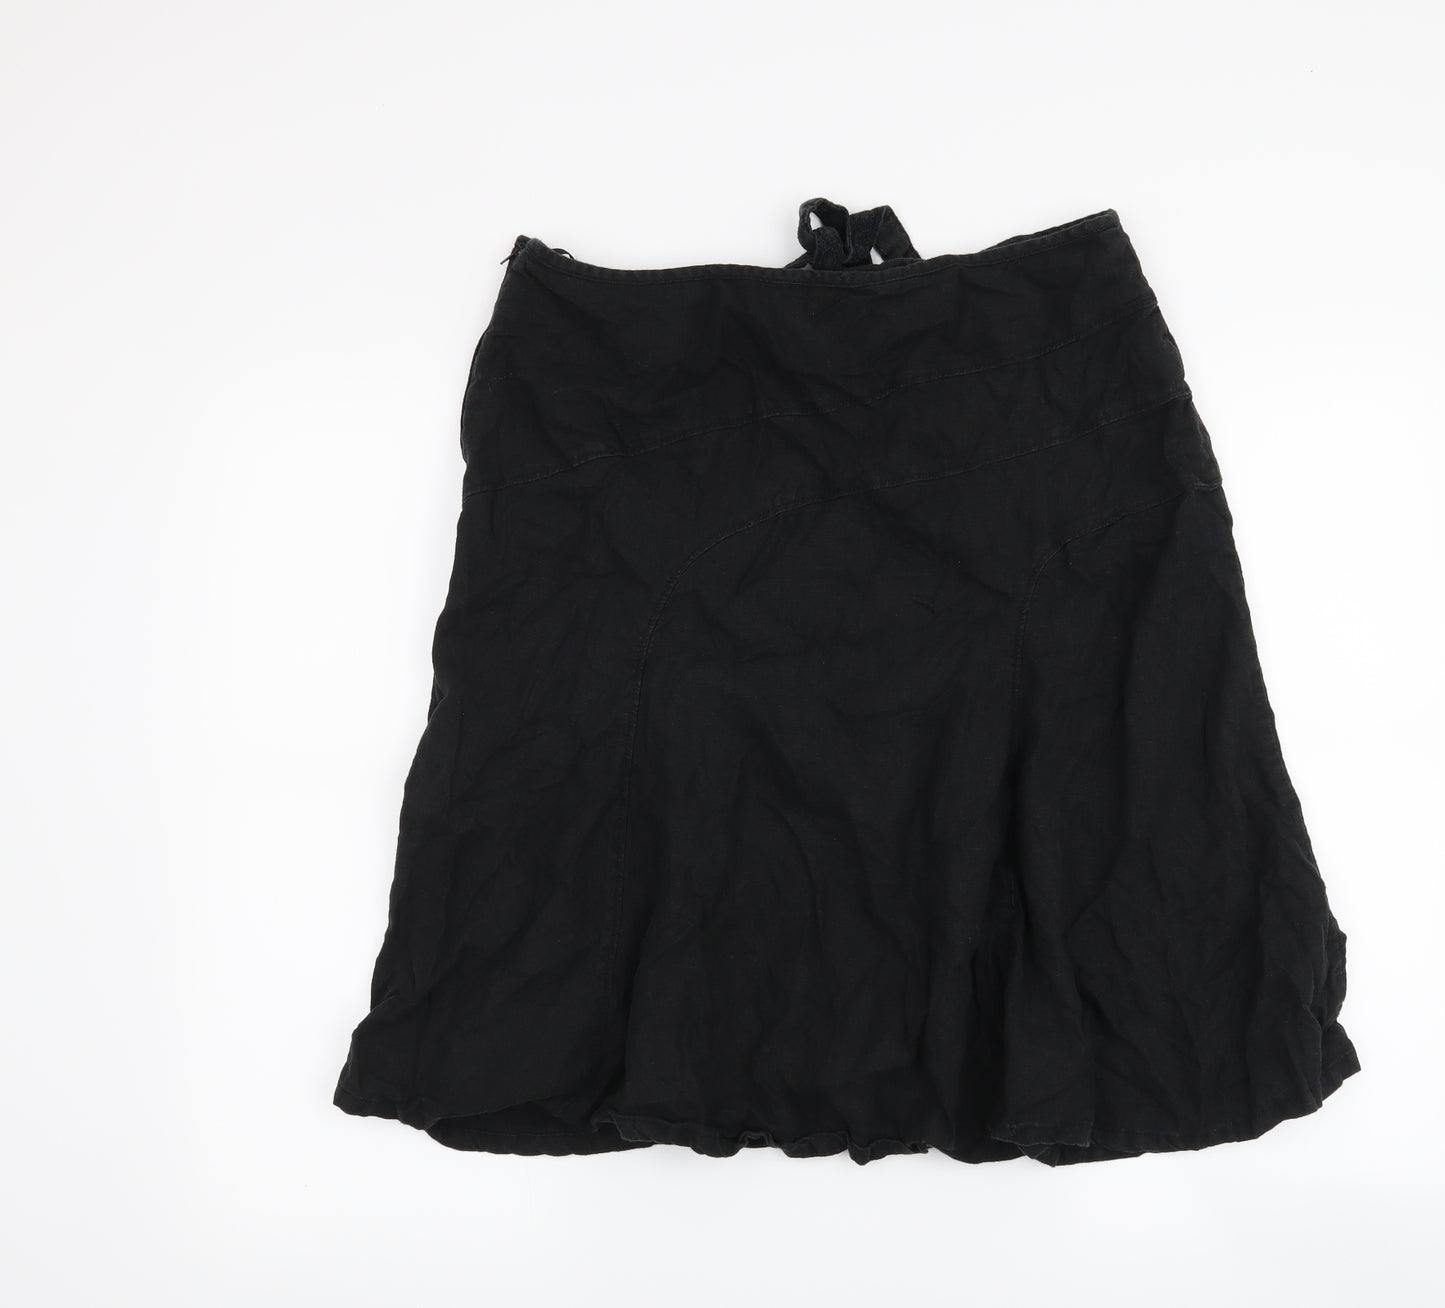 NEXT Womens Black   A-Line Skirt Size 16